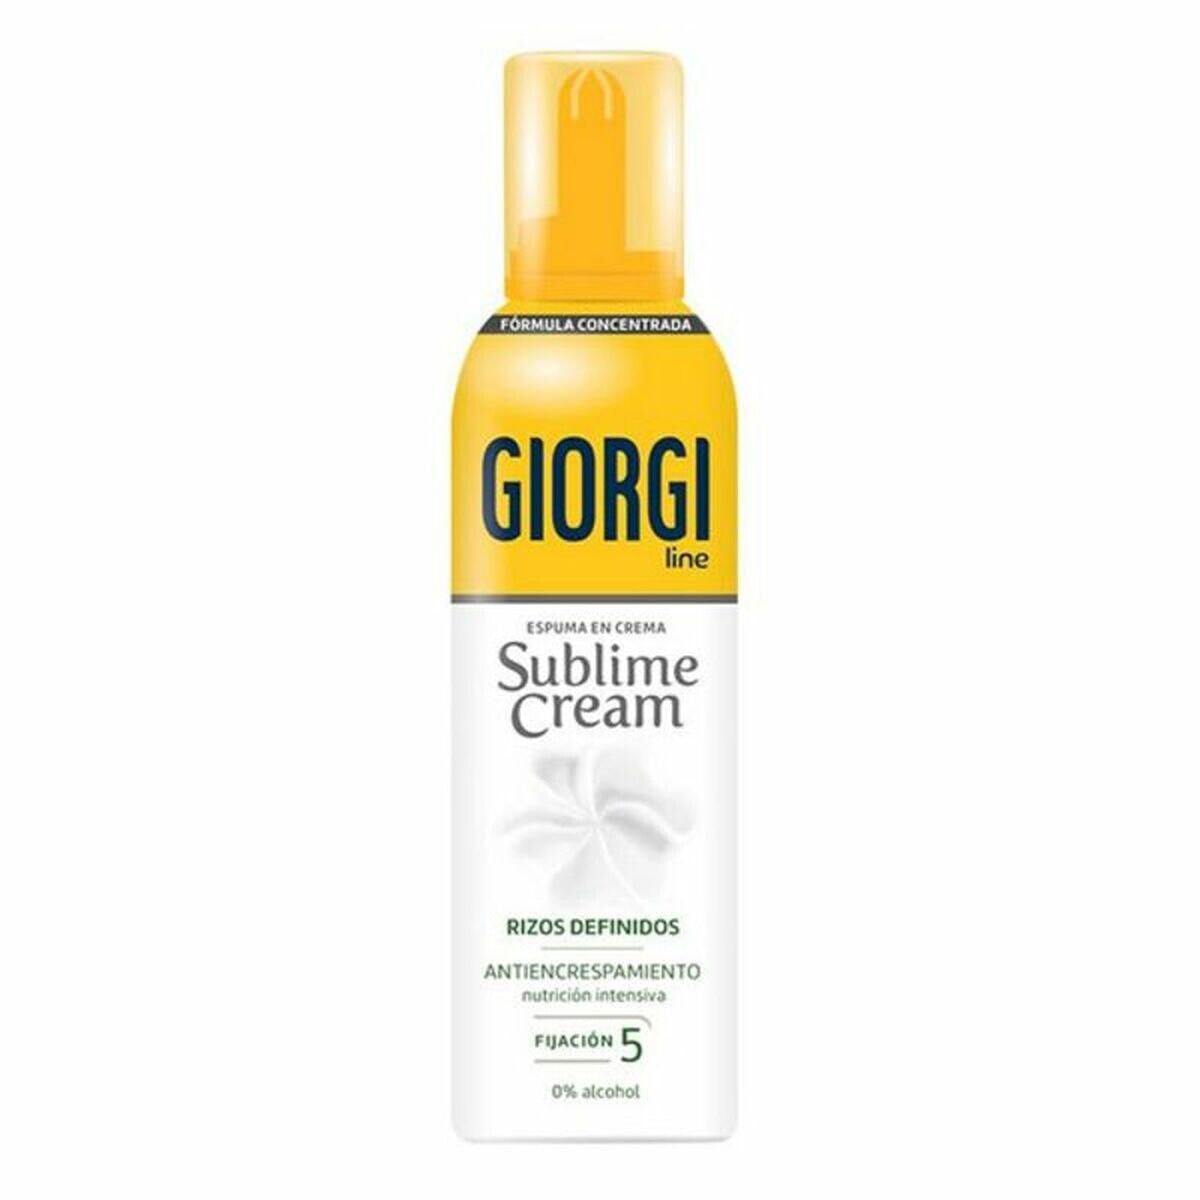 Пенка для завивки Sublime Cream Giorgi (150 ml)